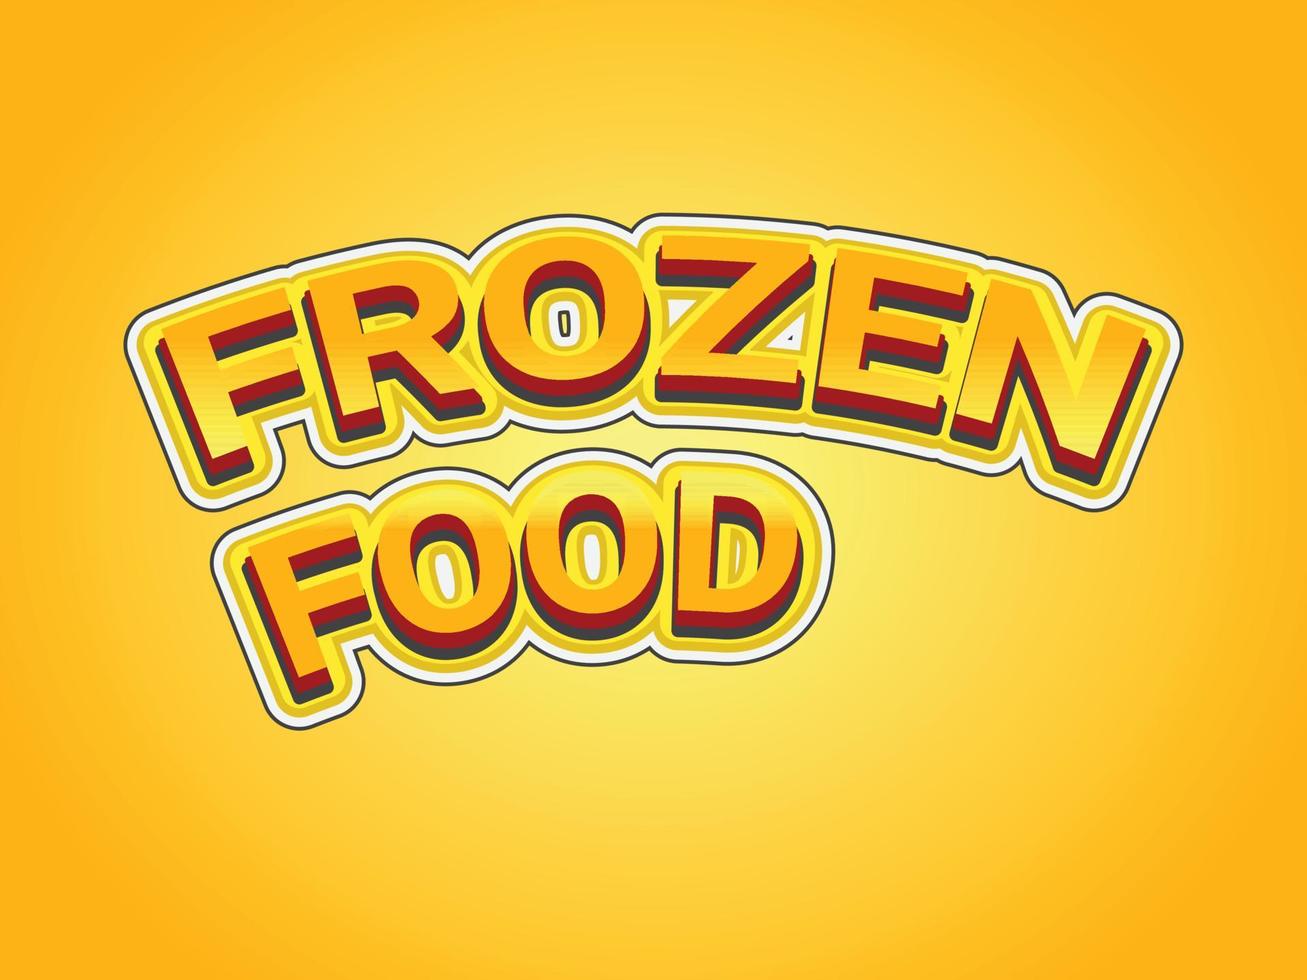 modelo de efeito de texto de comida congelada com uso de estilo 3d em negrito para logotipo vetor